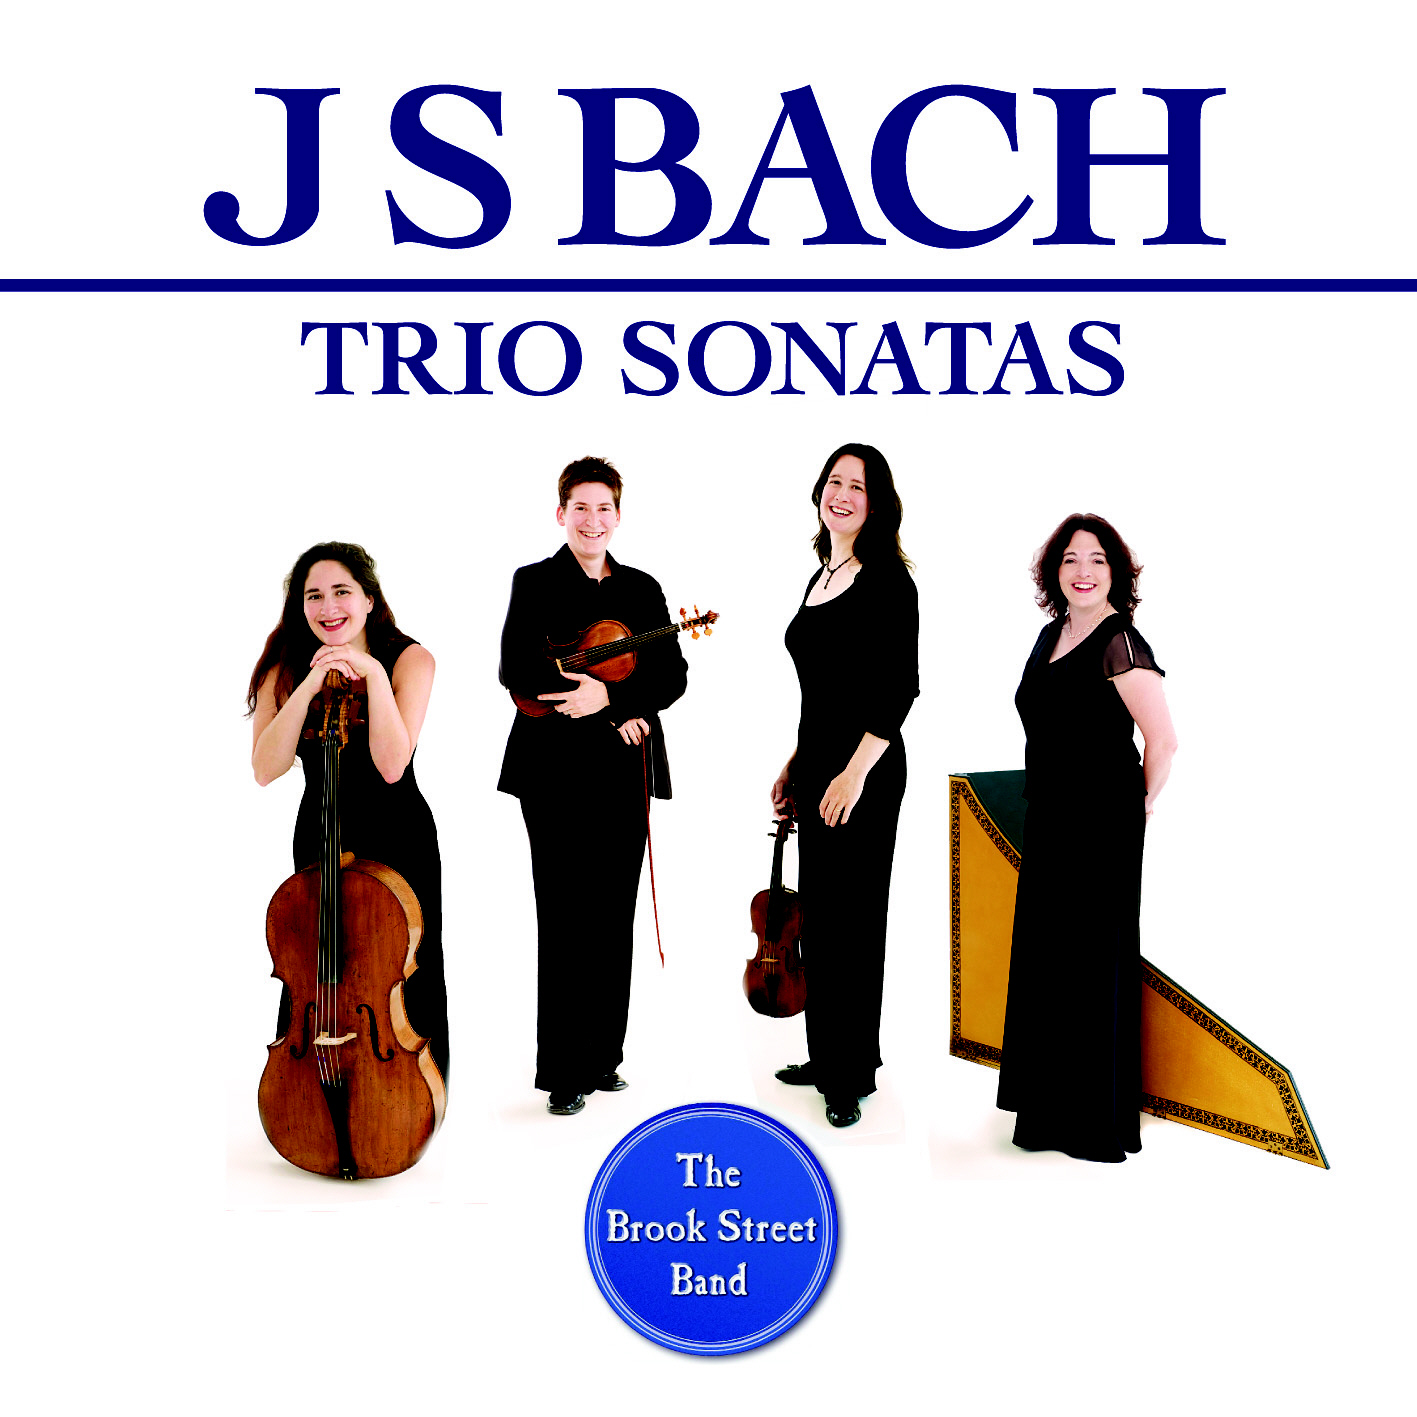 Бах трио. Трио Соната. Трио Соната Саратов. Perl Bach Trio Sonatas.